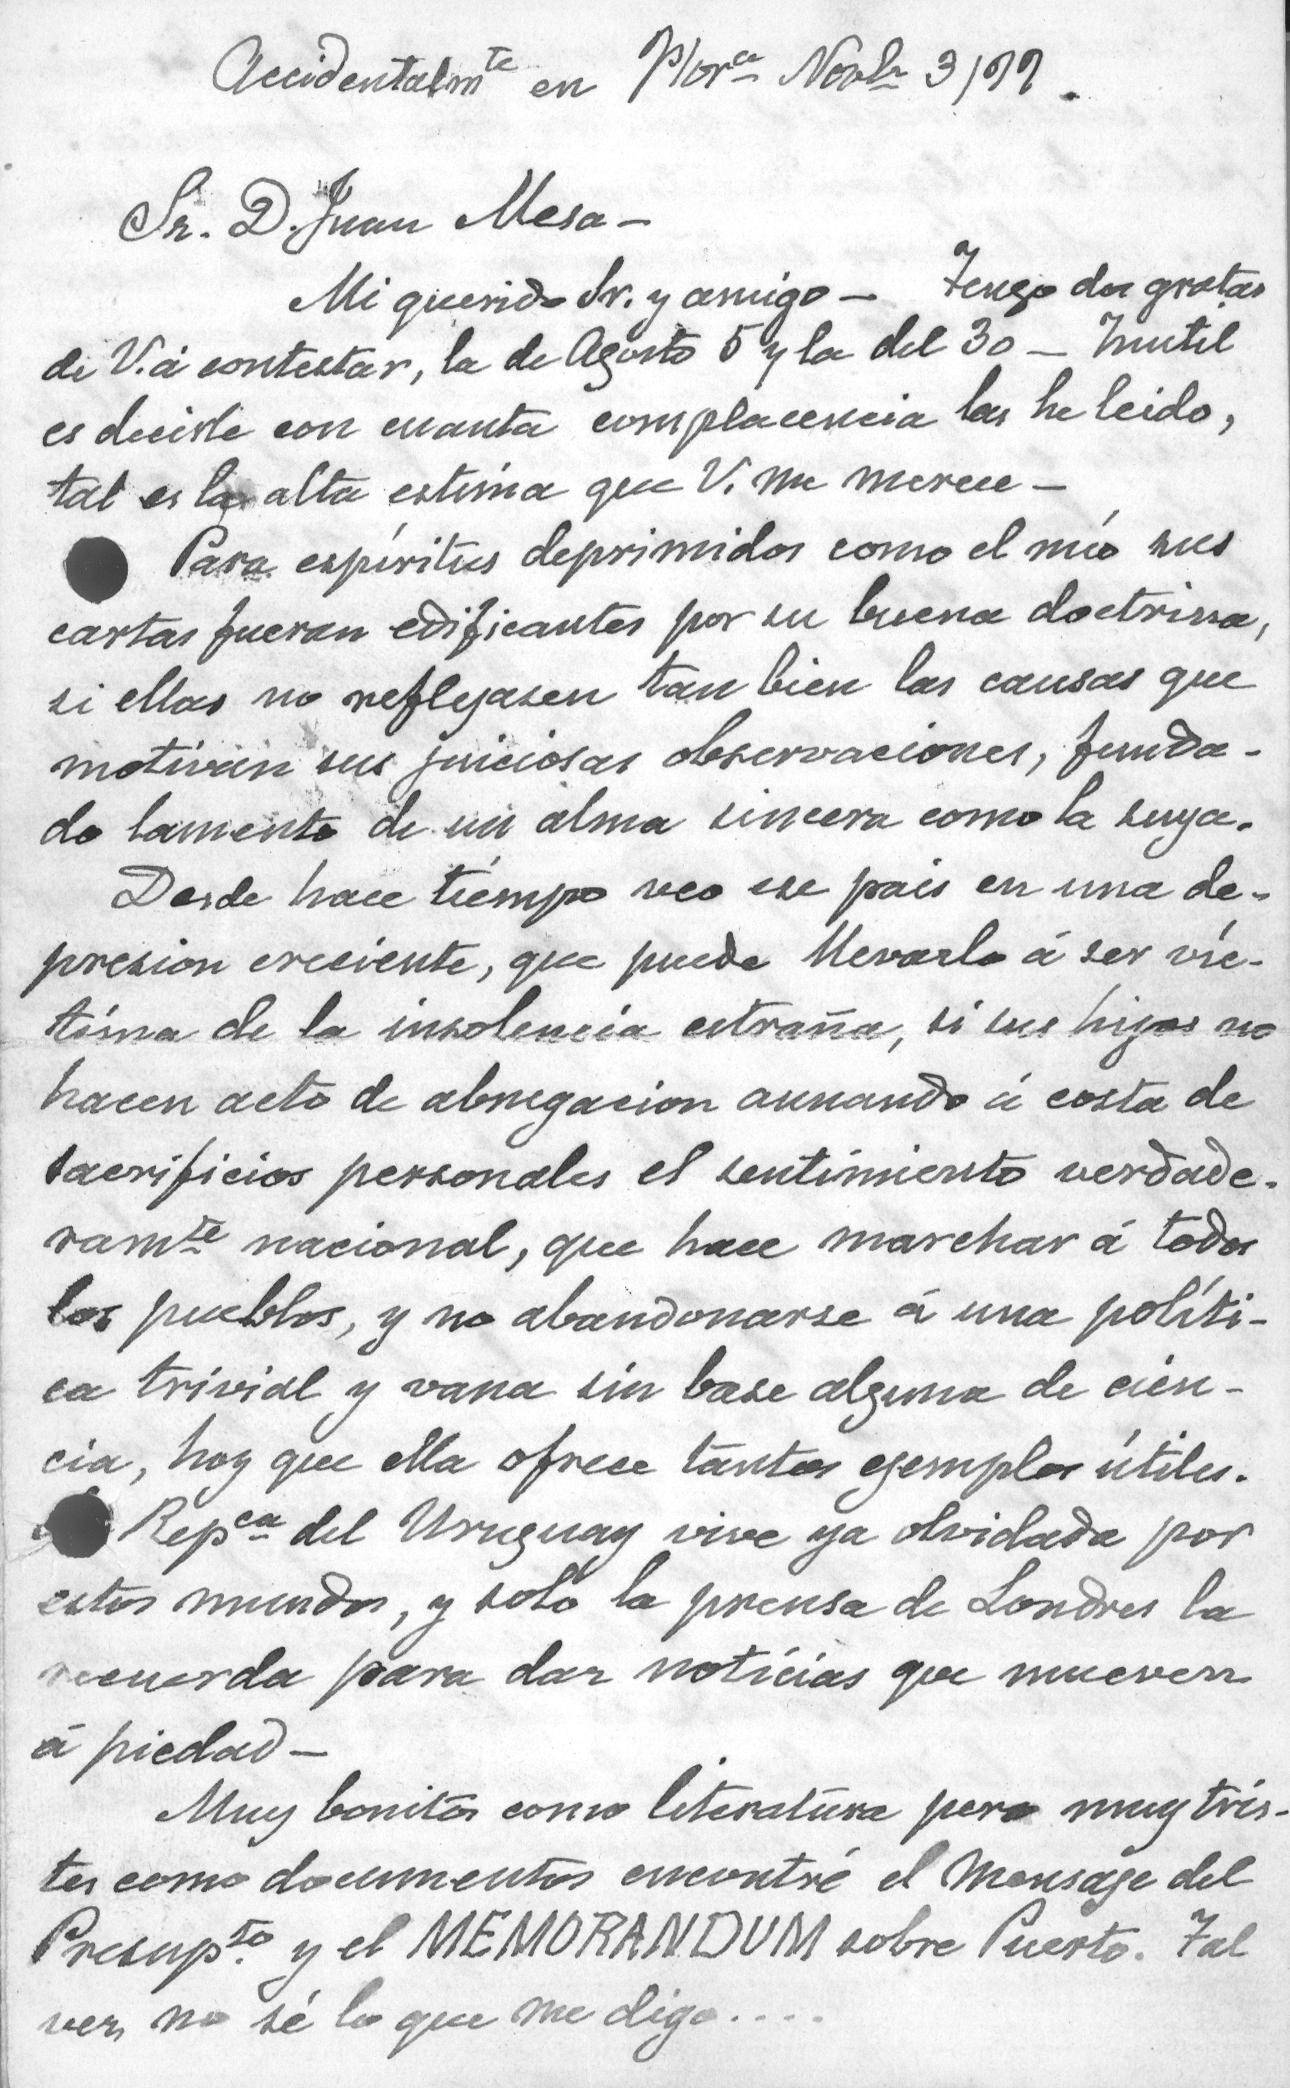 Cartas de Juan Manuel Blanes  - Carta de J.M.B. al Sr. Juan de Mesa , 3/11/1899